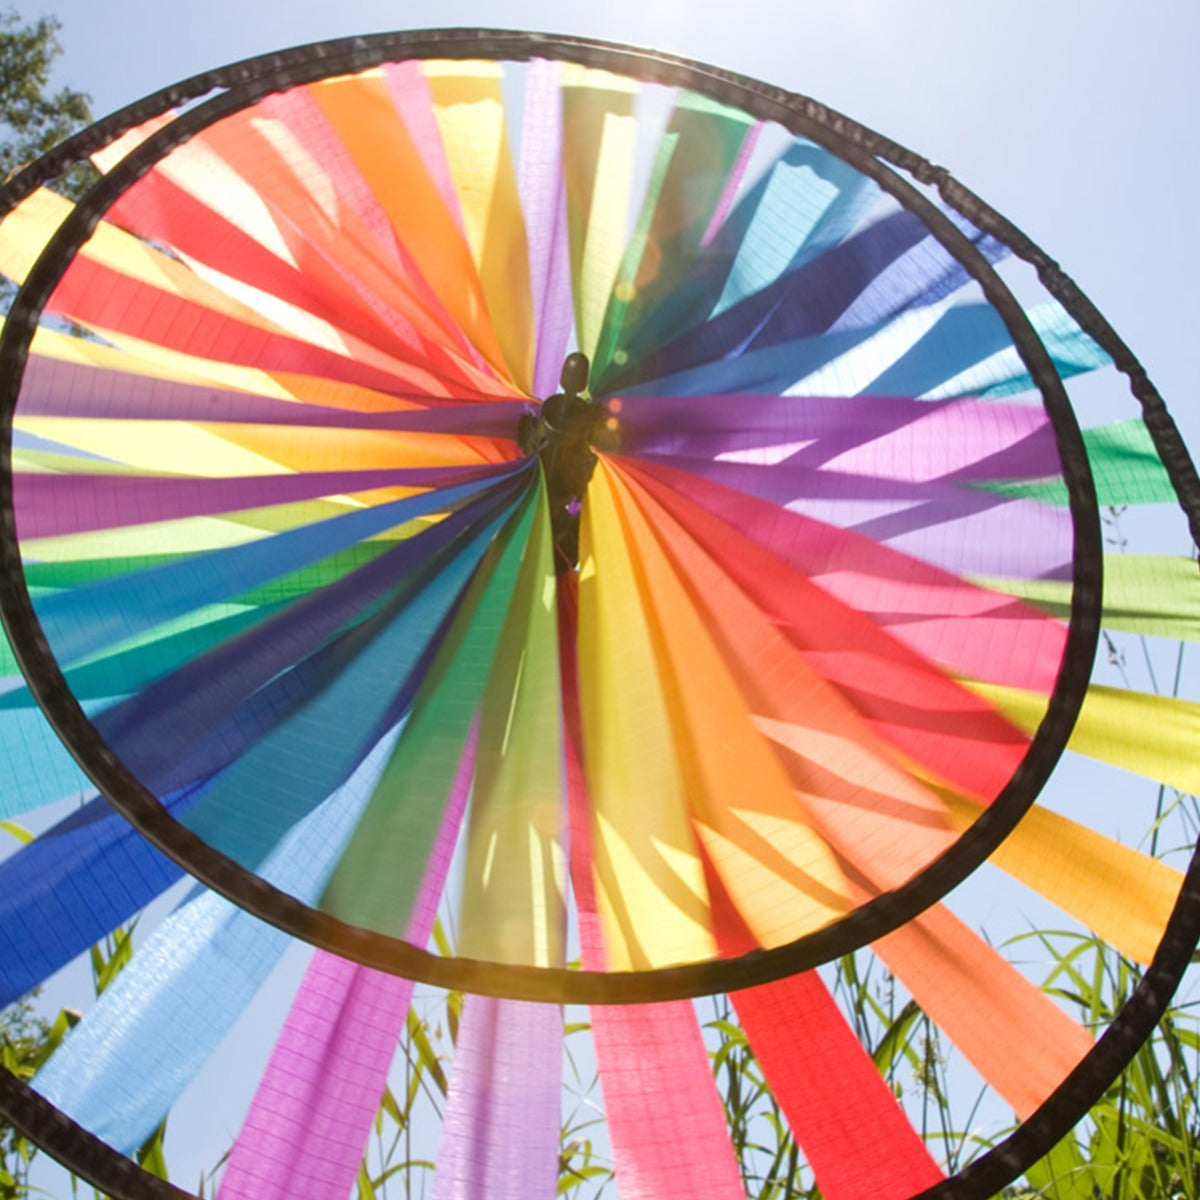 HQ Windspiel HQ Magic Wheel Duett Rainbow 44x96 cm Windrad